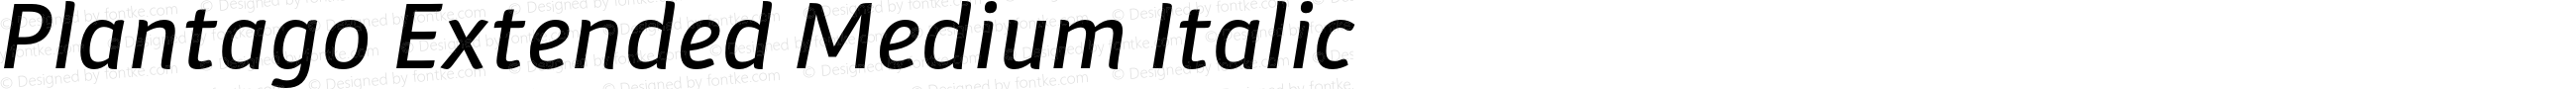 Plantago Extended Medium Italic